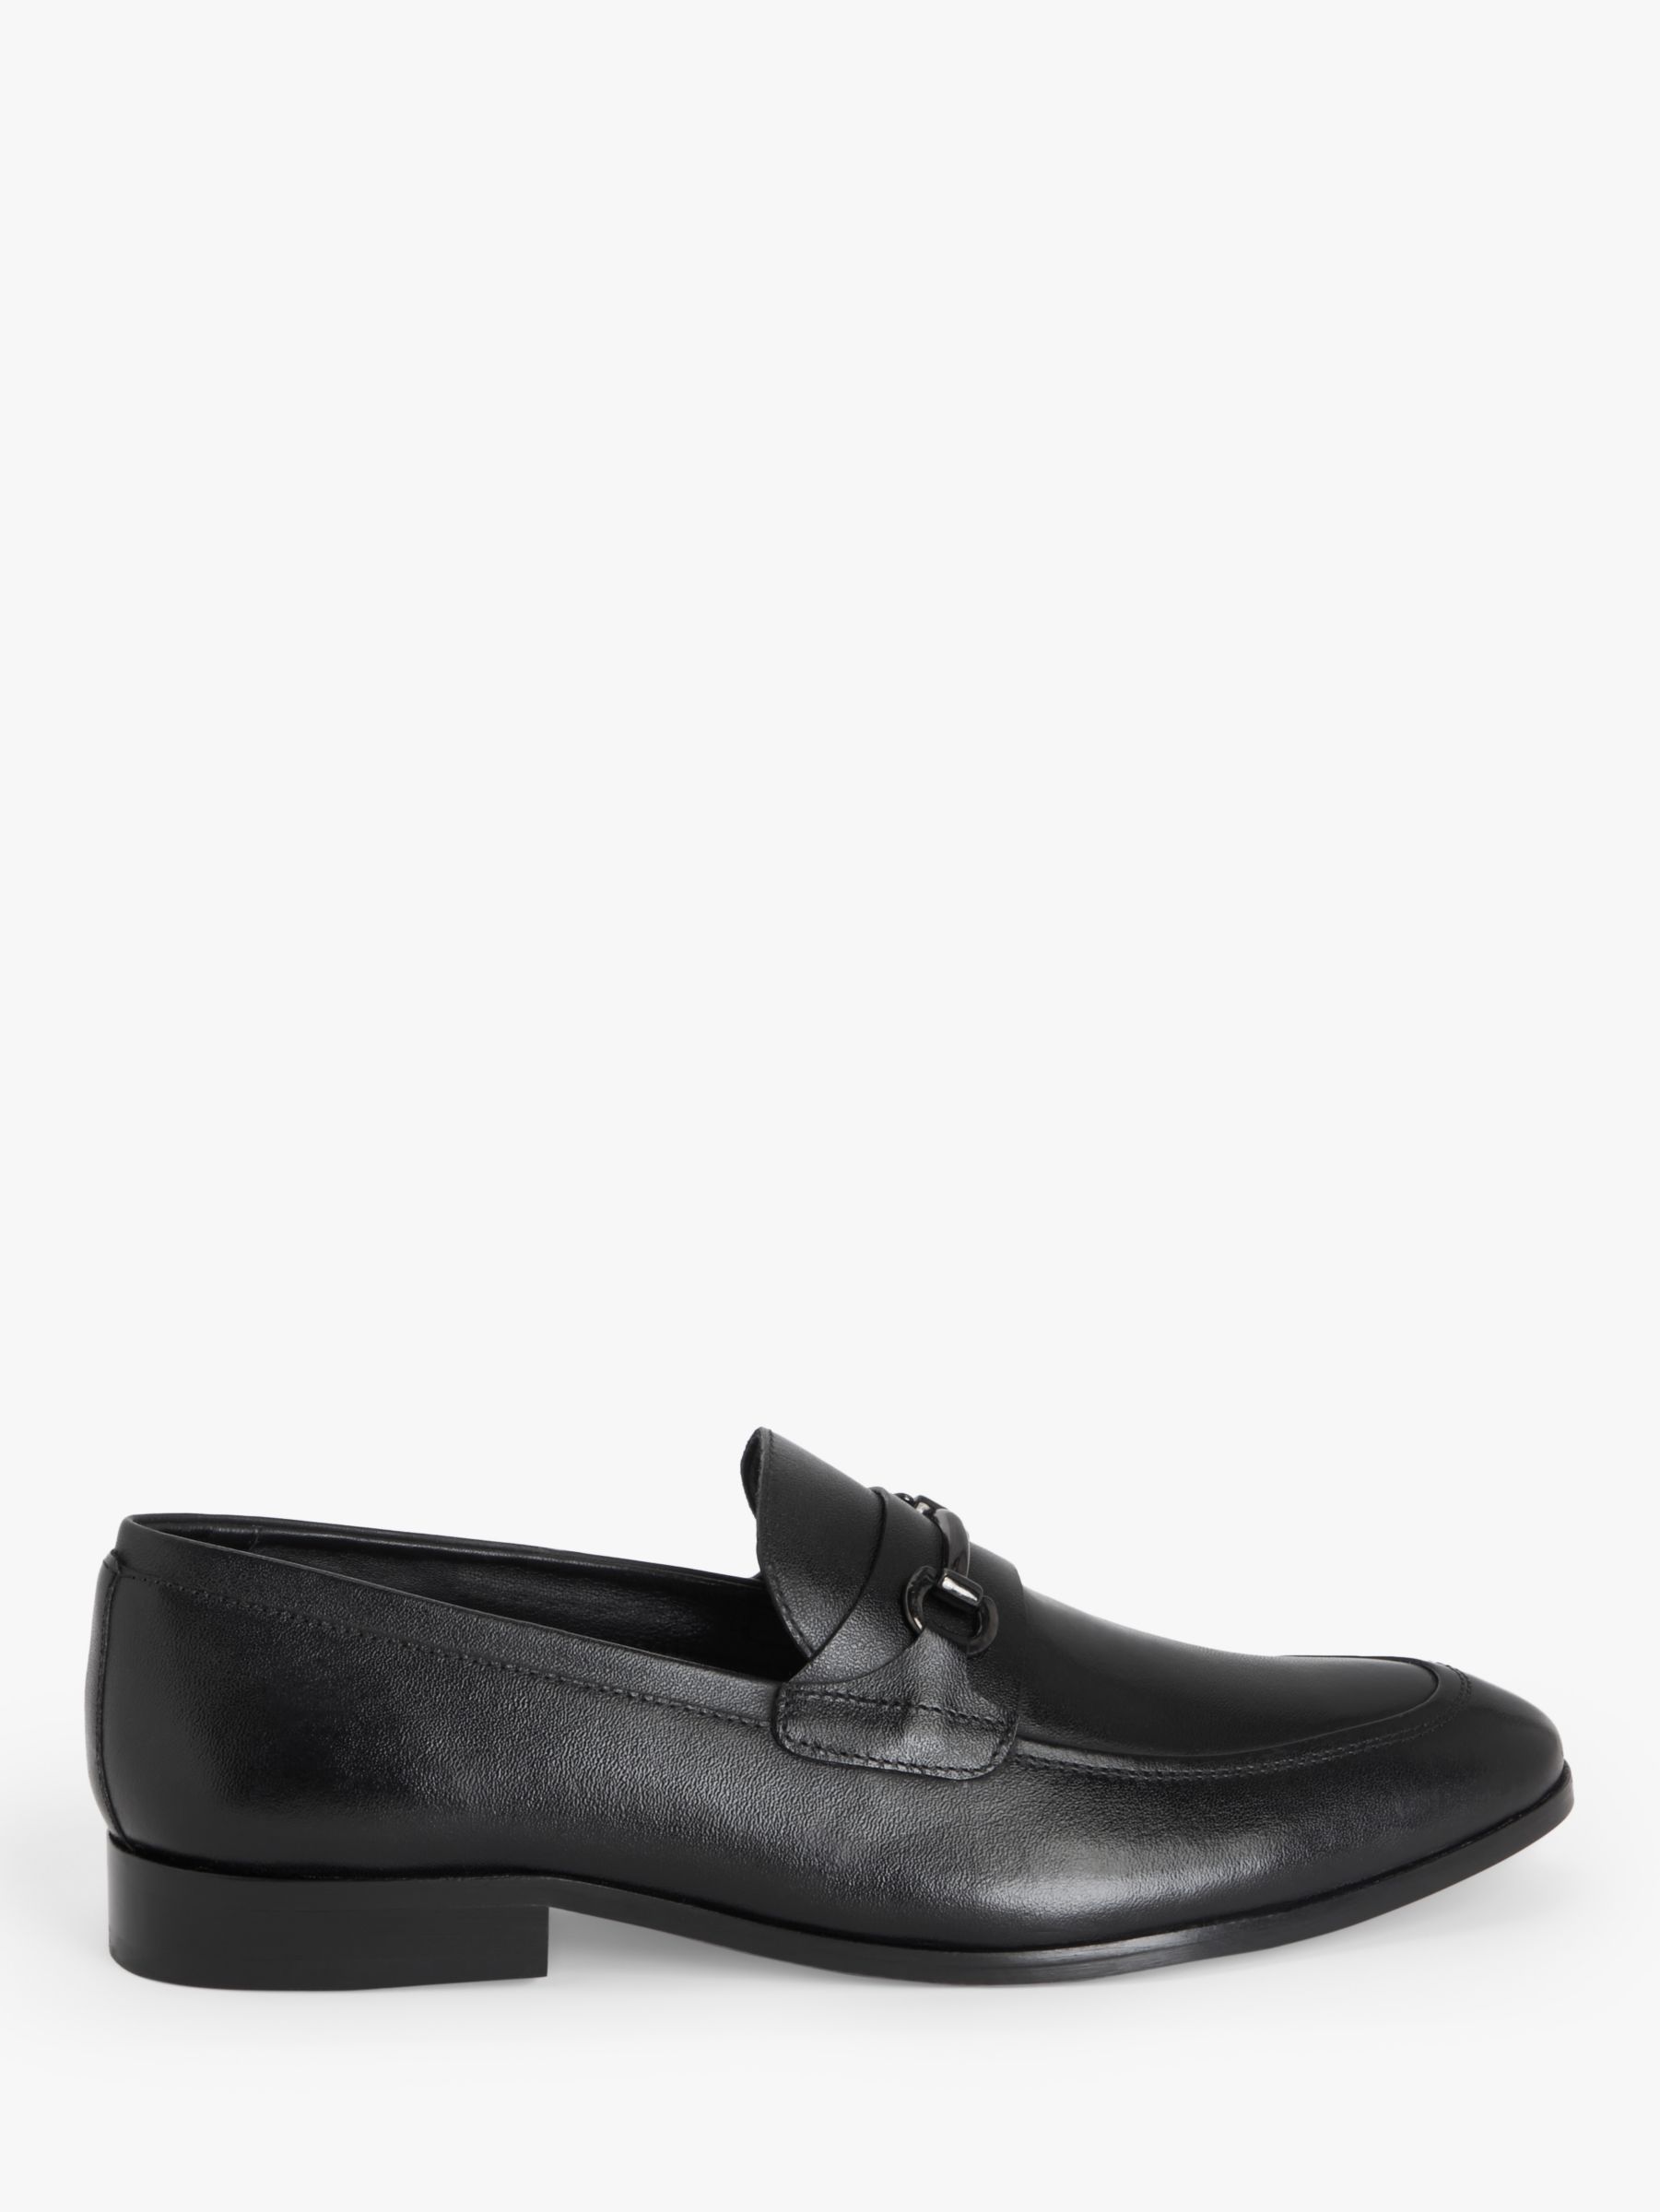 John Lewis Elsworth Trim Leather Loafers, Black, 9